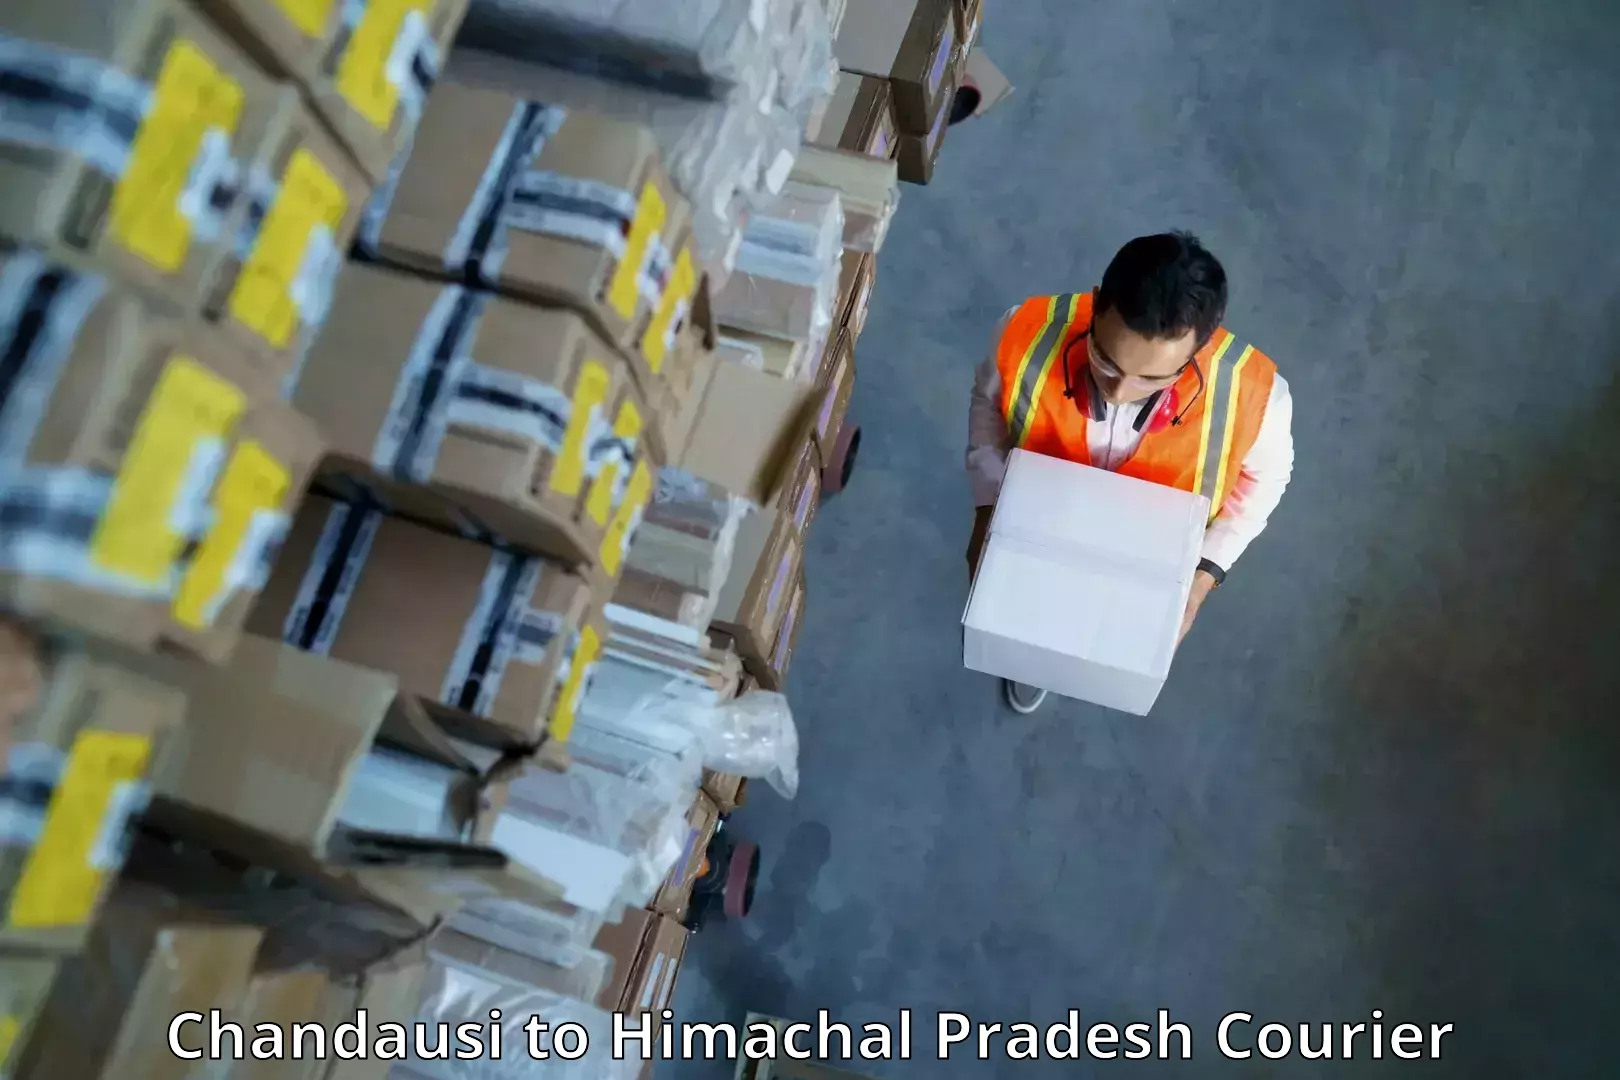 Urgent courier needs Chandausi to Nalagarh